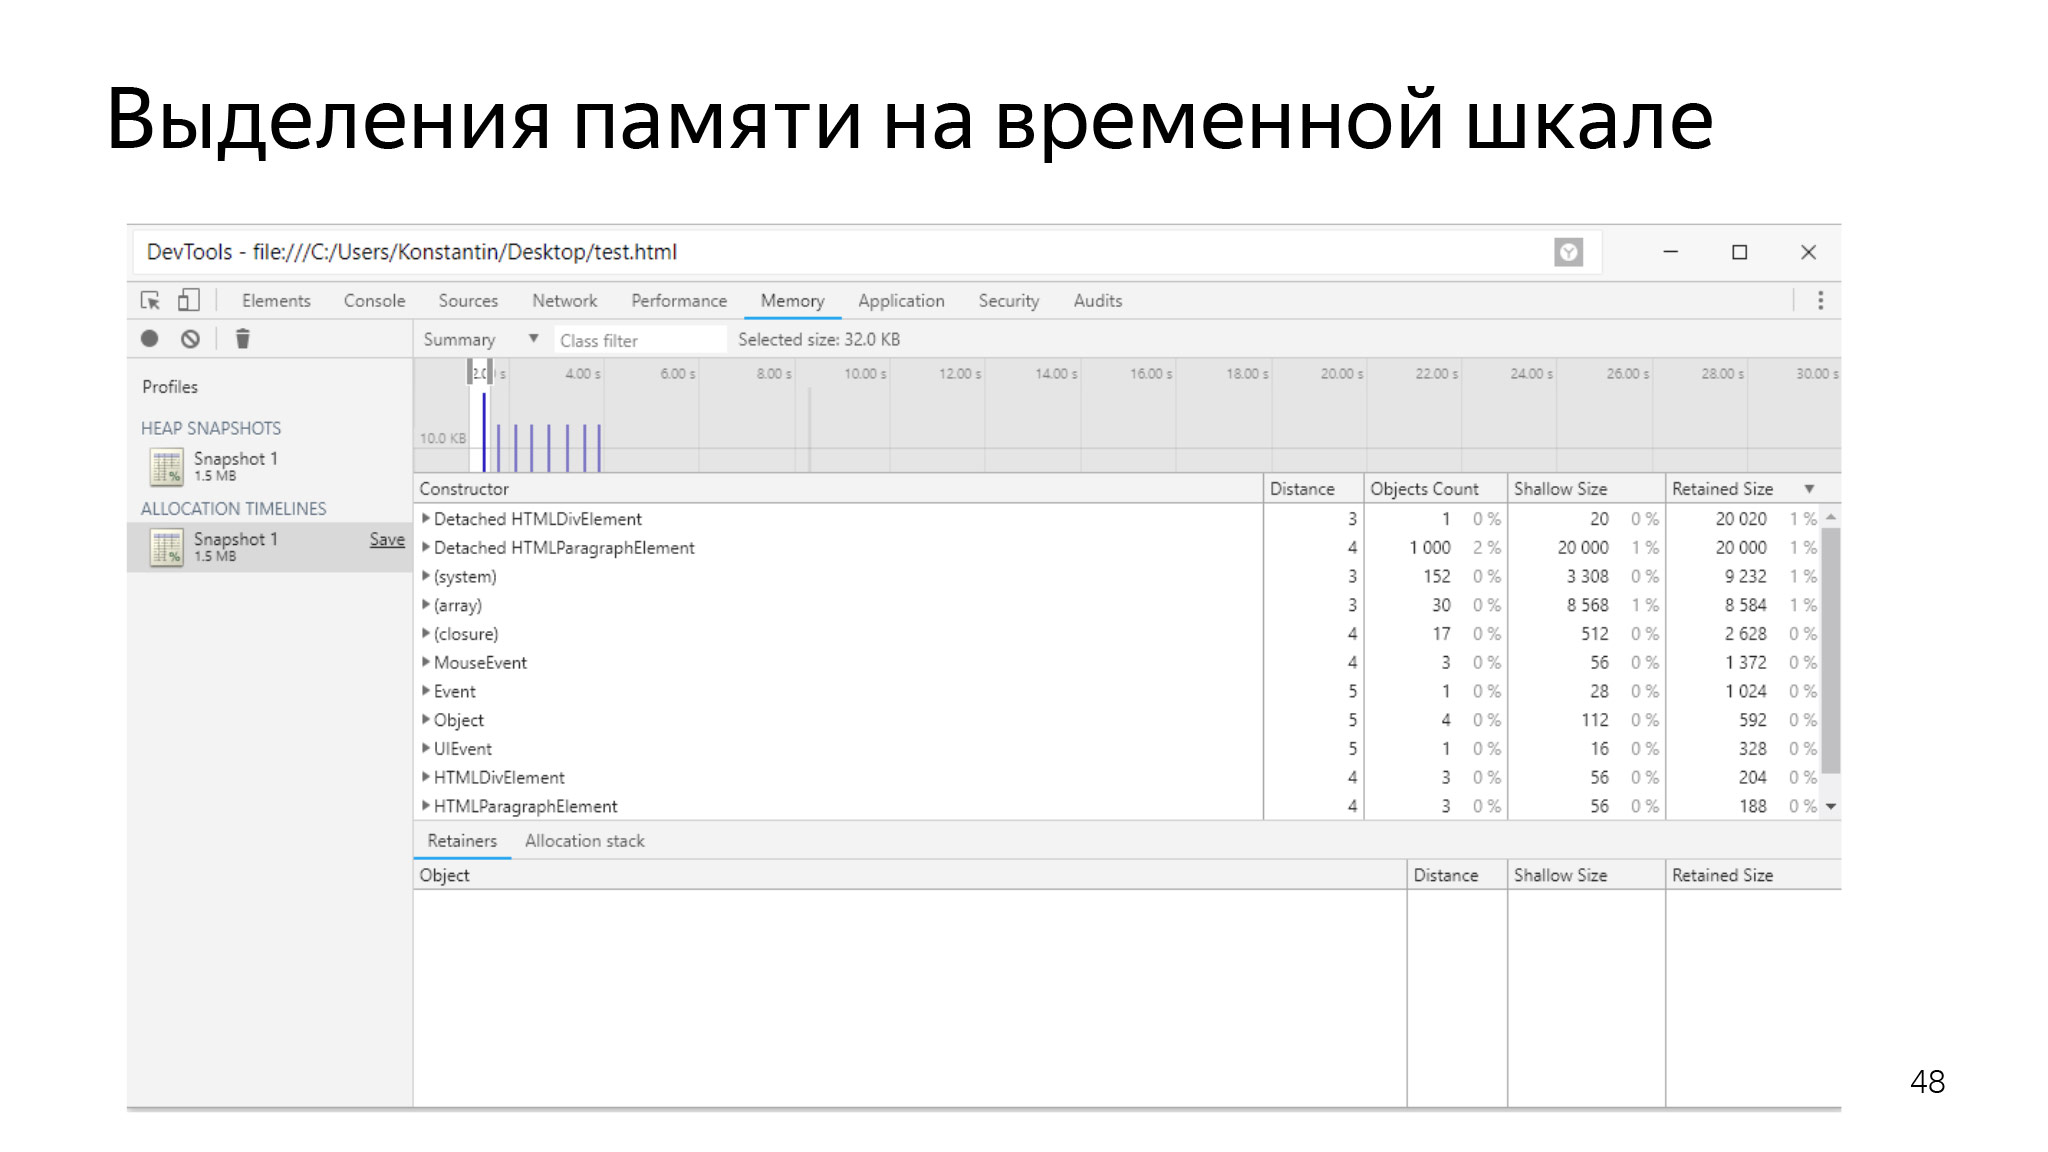 Как сэкономить ресурсы в браузере и не сломать веб. Доклад Яндекса - 33